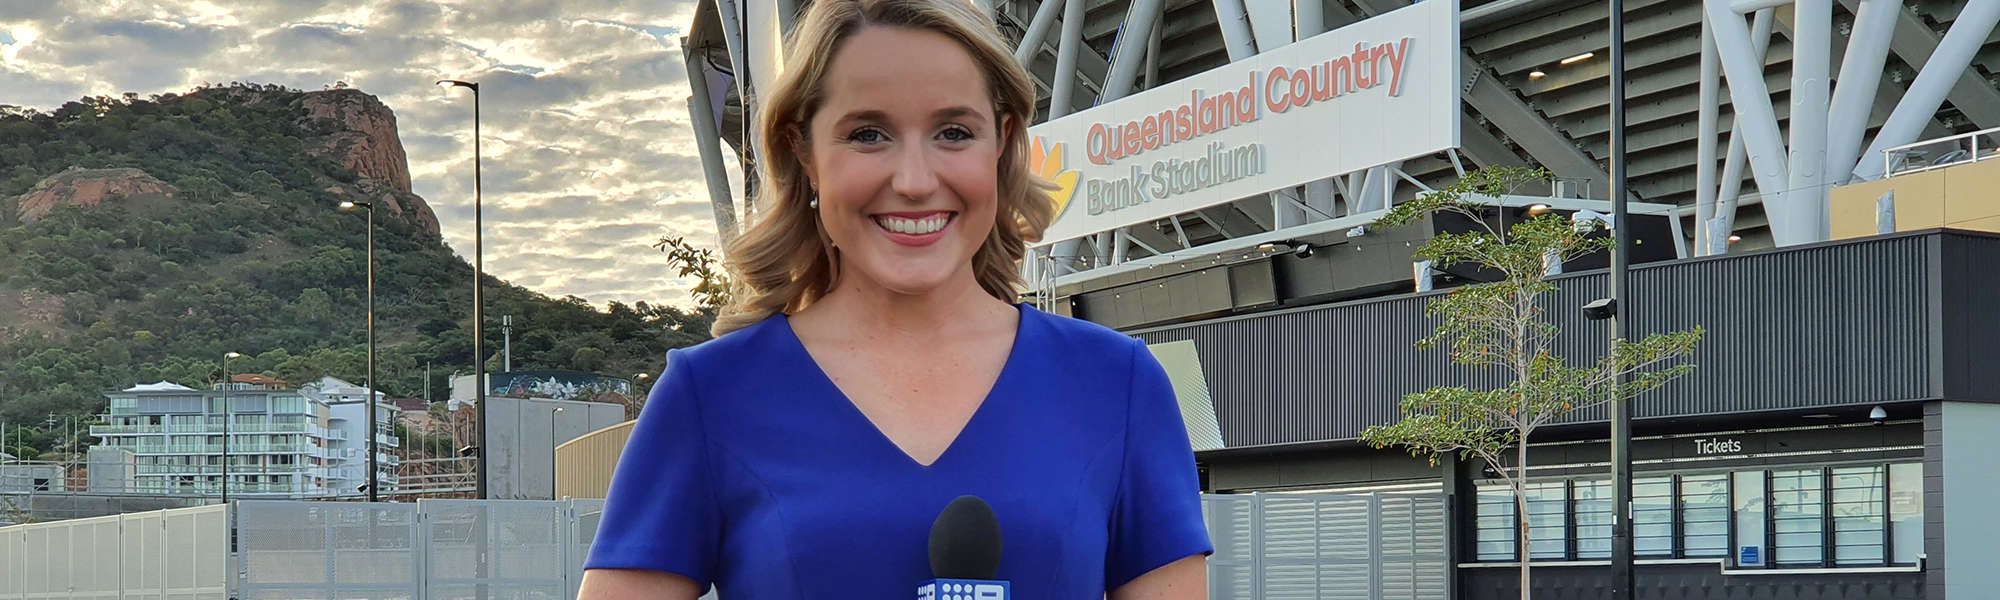 Meet Journalist and Townsville Local Erin Buchan